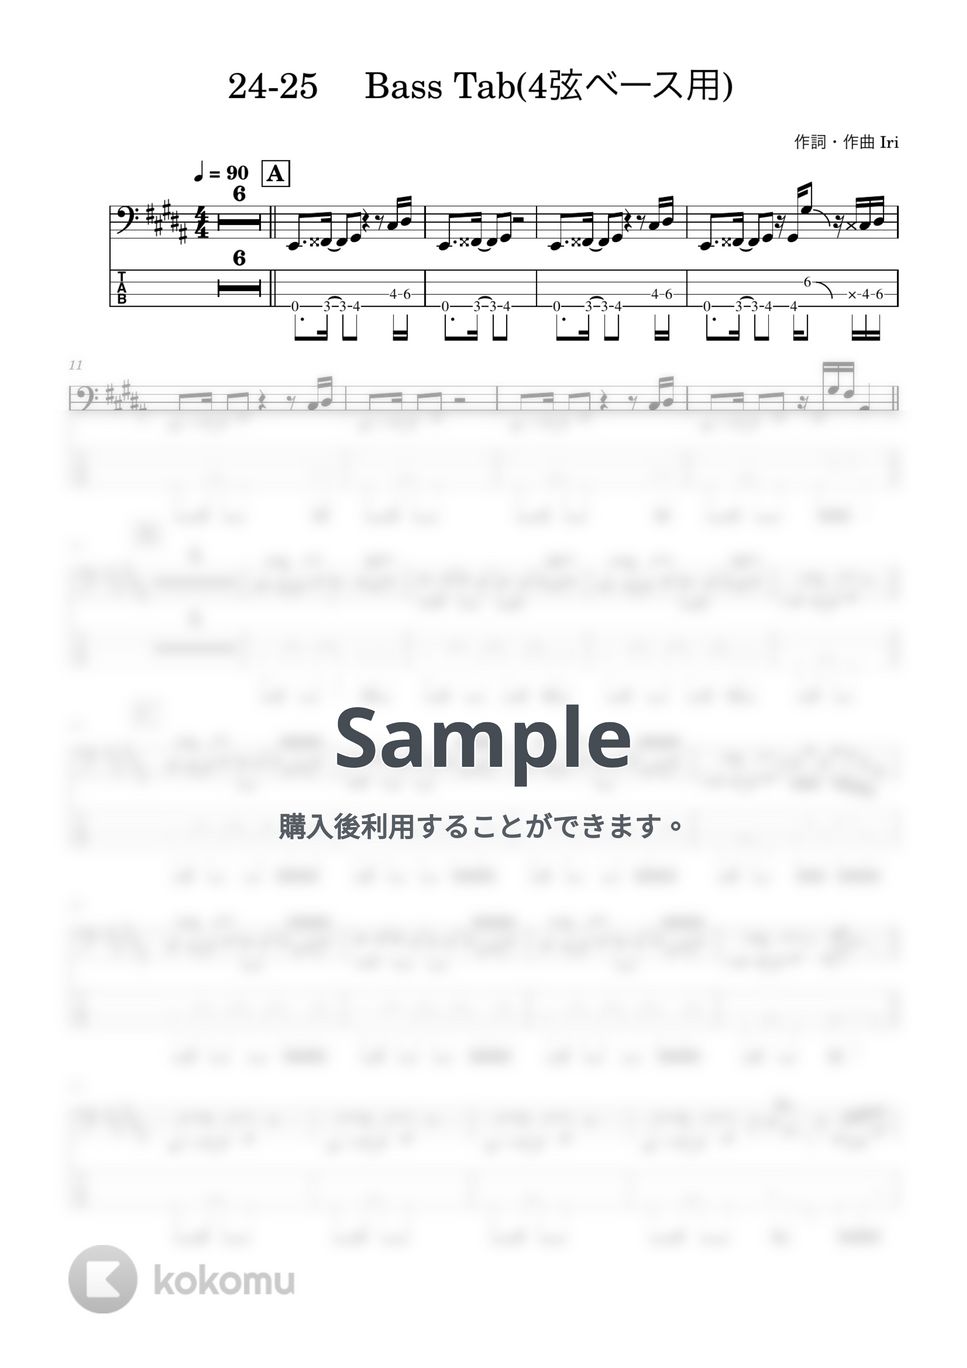 Iri - 24-25 (ベース譜) by Kodai Hojo